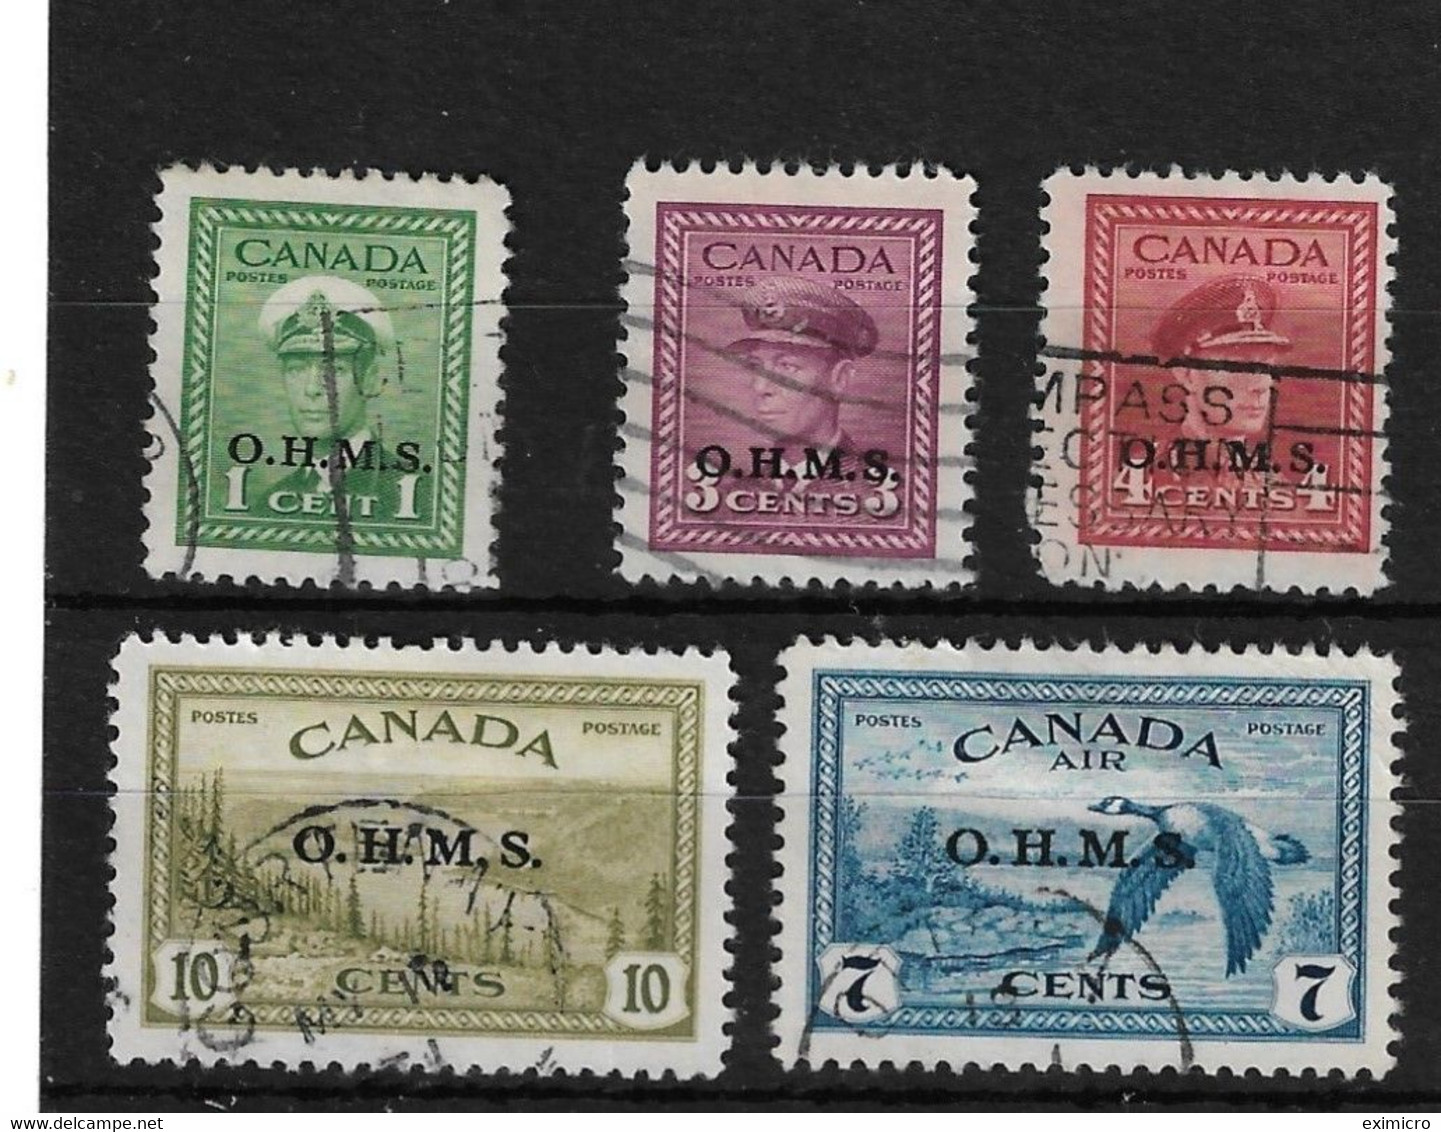 CANADA 1949 O.H.M.S. OFFICIALS SG O162, O164 - O166, O171 FINE USED Cat £40+ - Surchargés